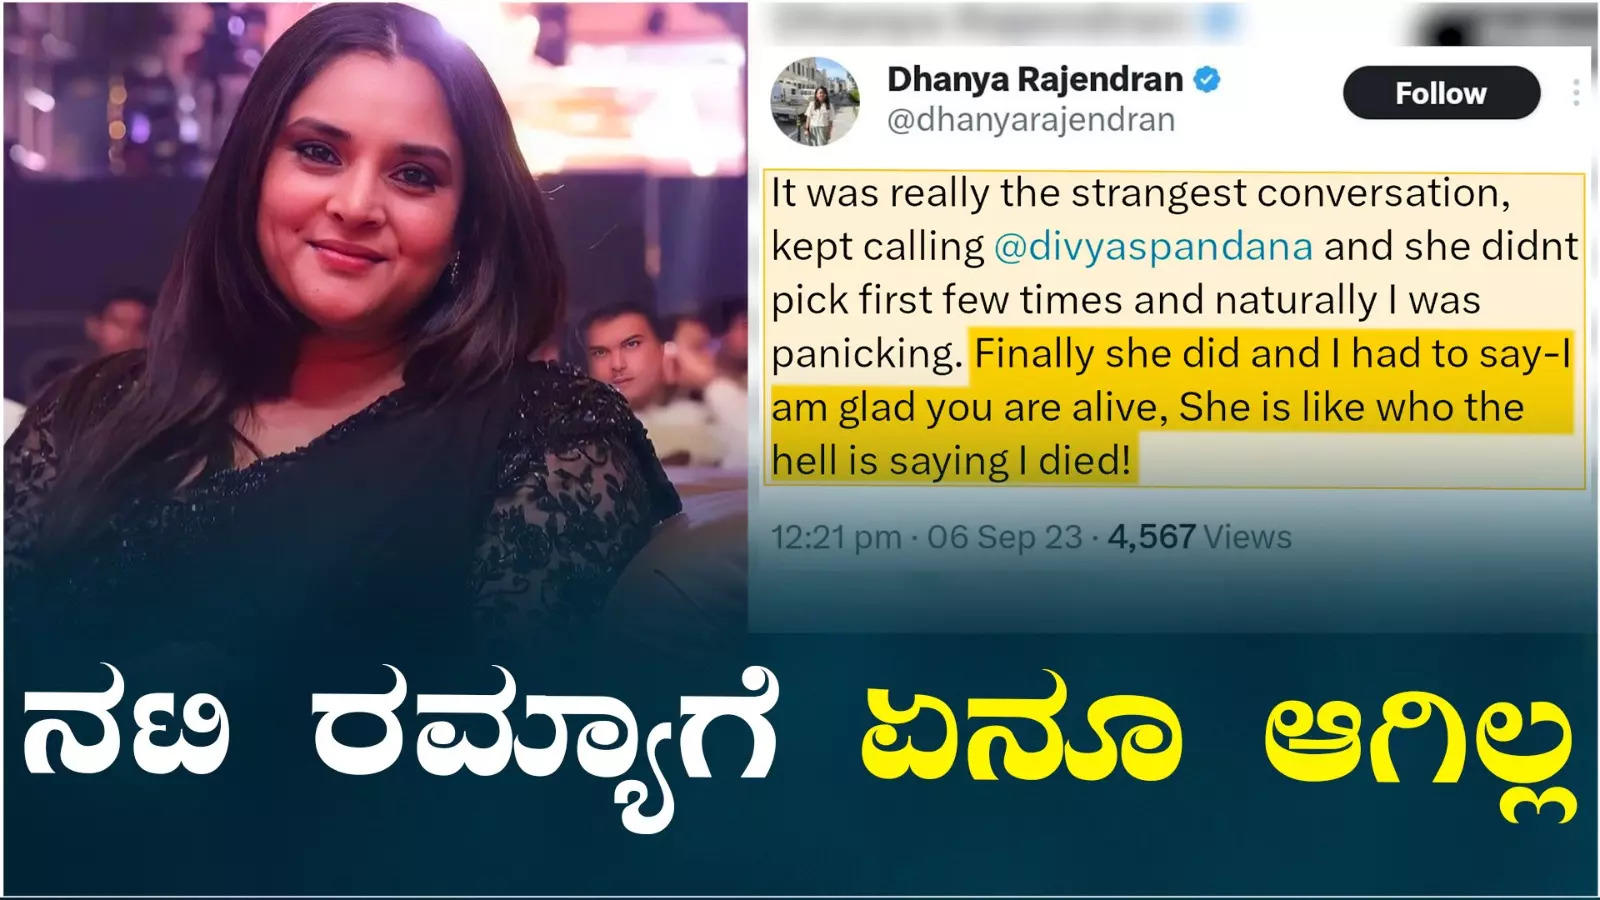 Actress Ramya is Alive: ಆರೋಗ್ಯವಾಗಿದ್ದಾರೆ 'ಮೋಹಕತಾರೆ' ನಟಿ ರಮ್ಯಾ! ವದಂತಿಗೆ ಕಿವಿ ಕೊಡ್ಬೇಡಿ